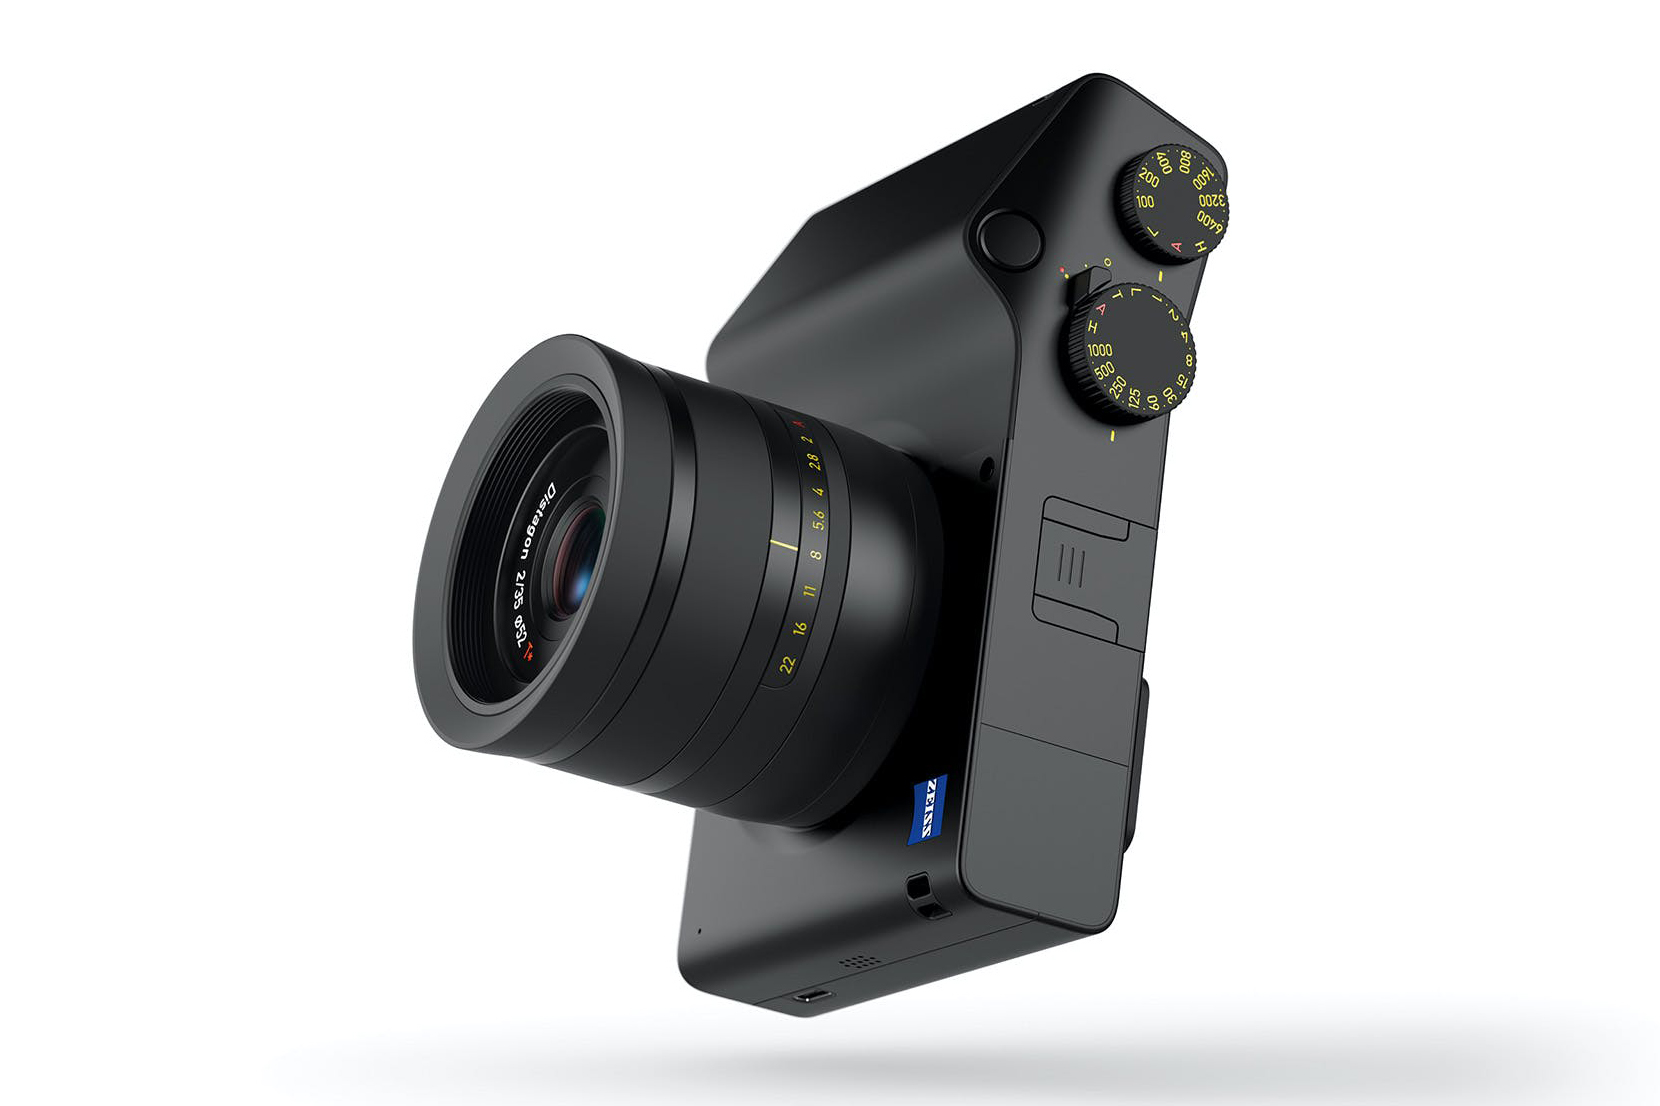 Máy ảnh Zeiss ZX1, cảm biến full frame 37MP, tích hợp Lightroom chính thức bán ra